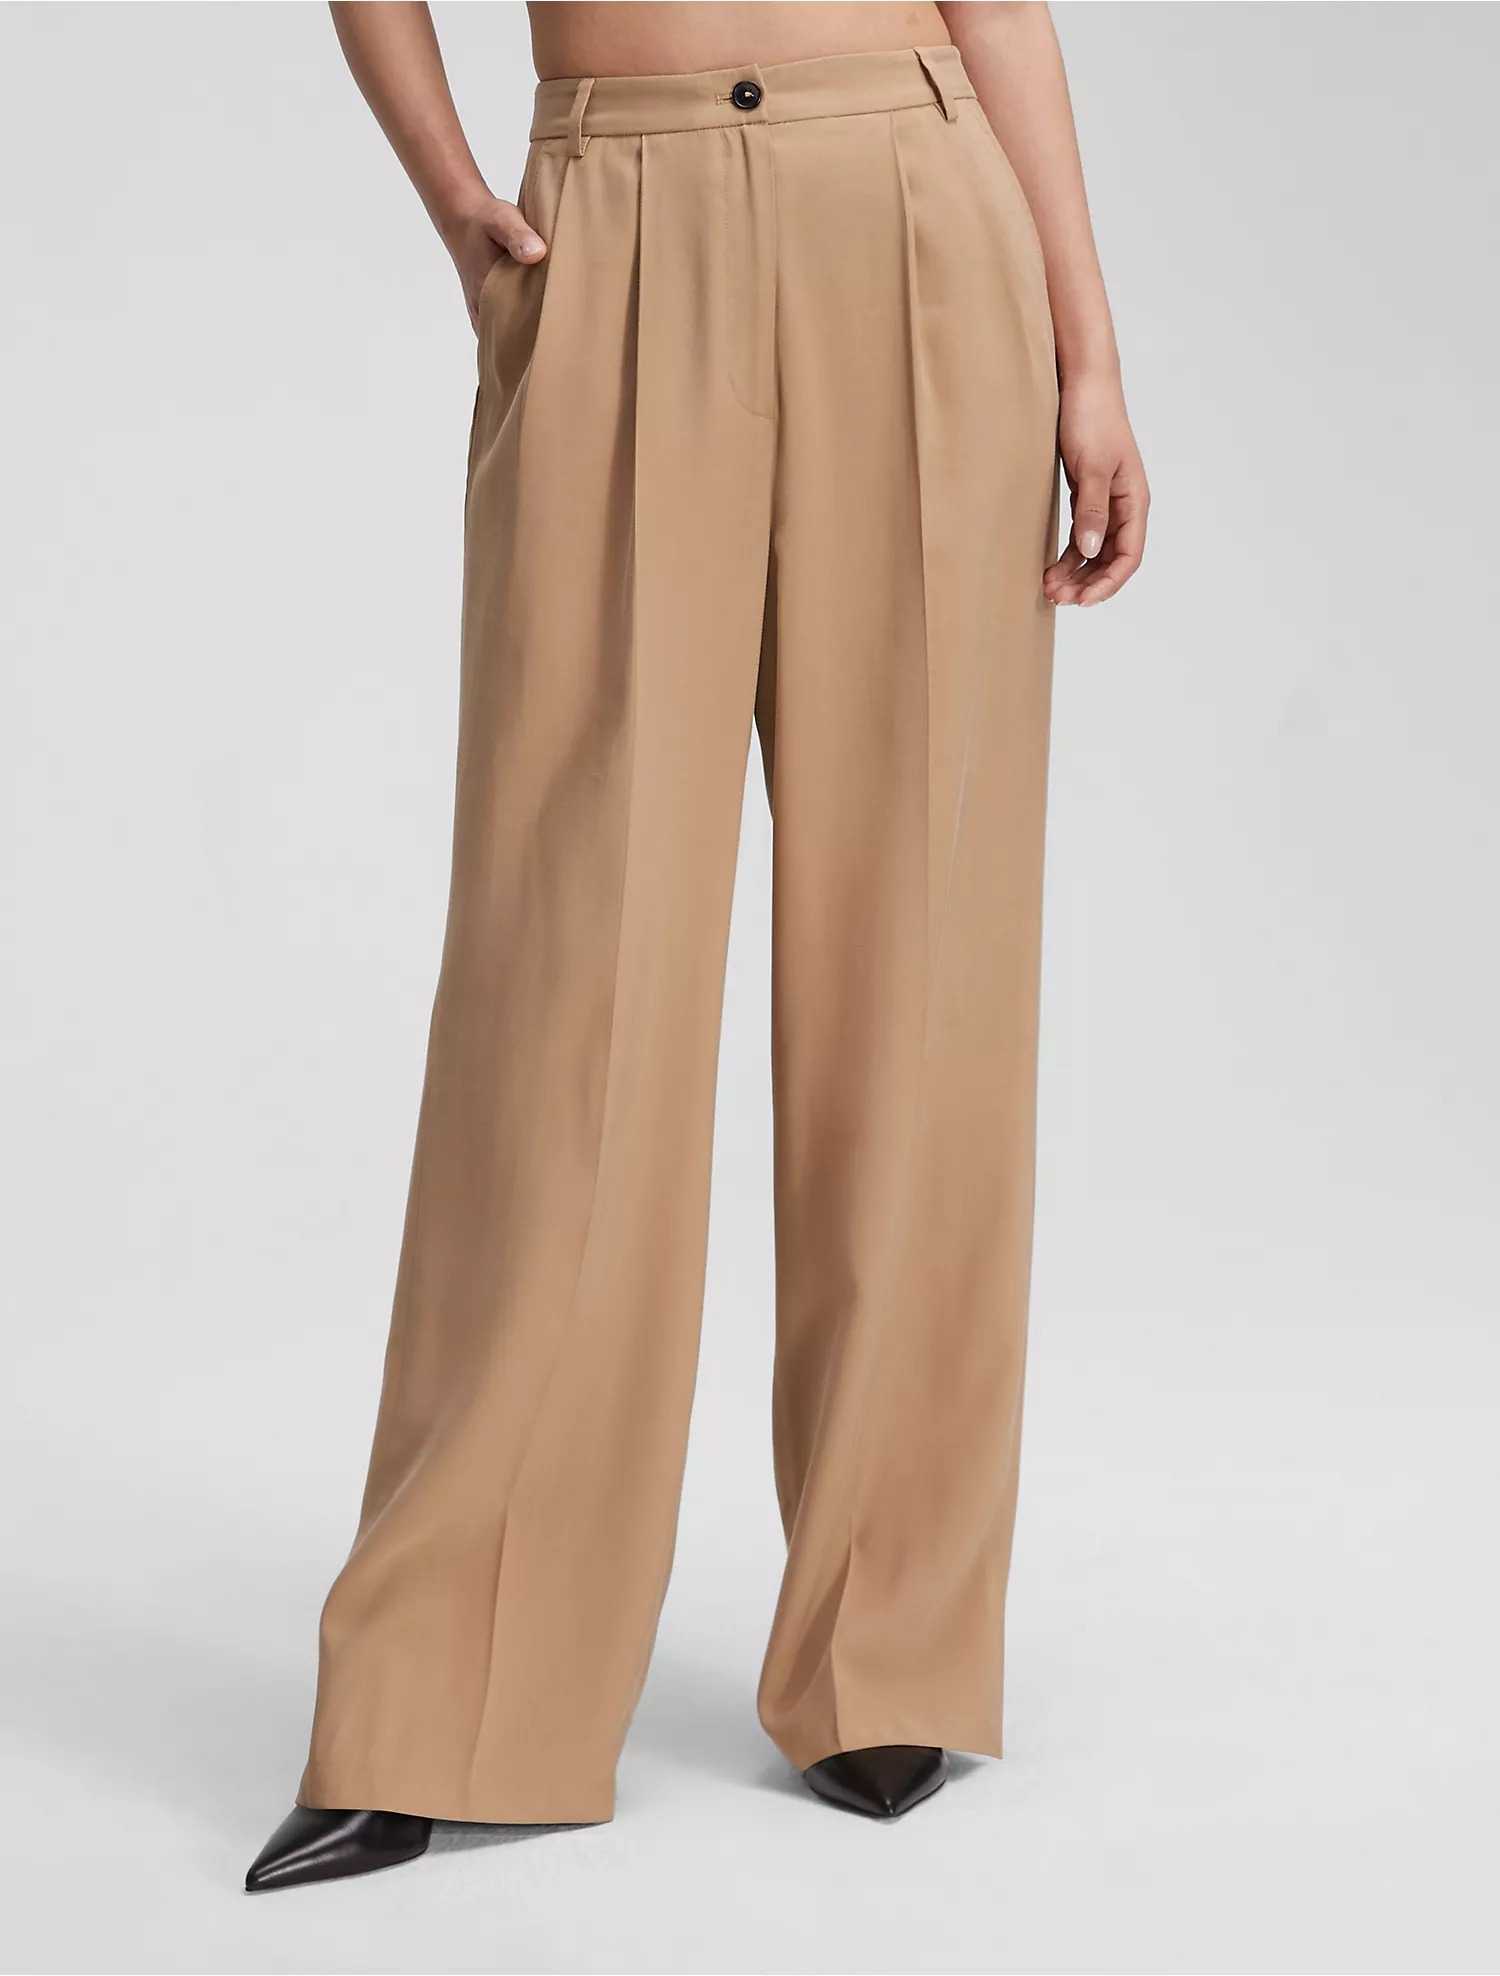 Брюки Calvin Klein Soft Twill Relaxed, бежевый брюки женские хлопково льняные свободного кроя повседневные штаны с завышенной талией и широкими штанинами модные брюки оверсайз до щико